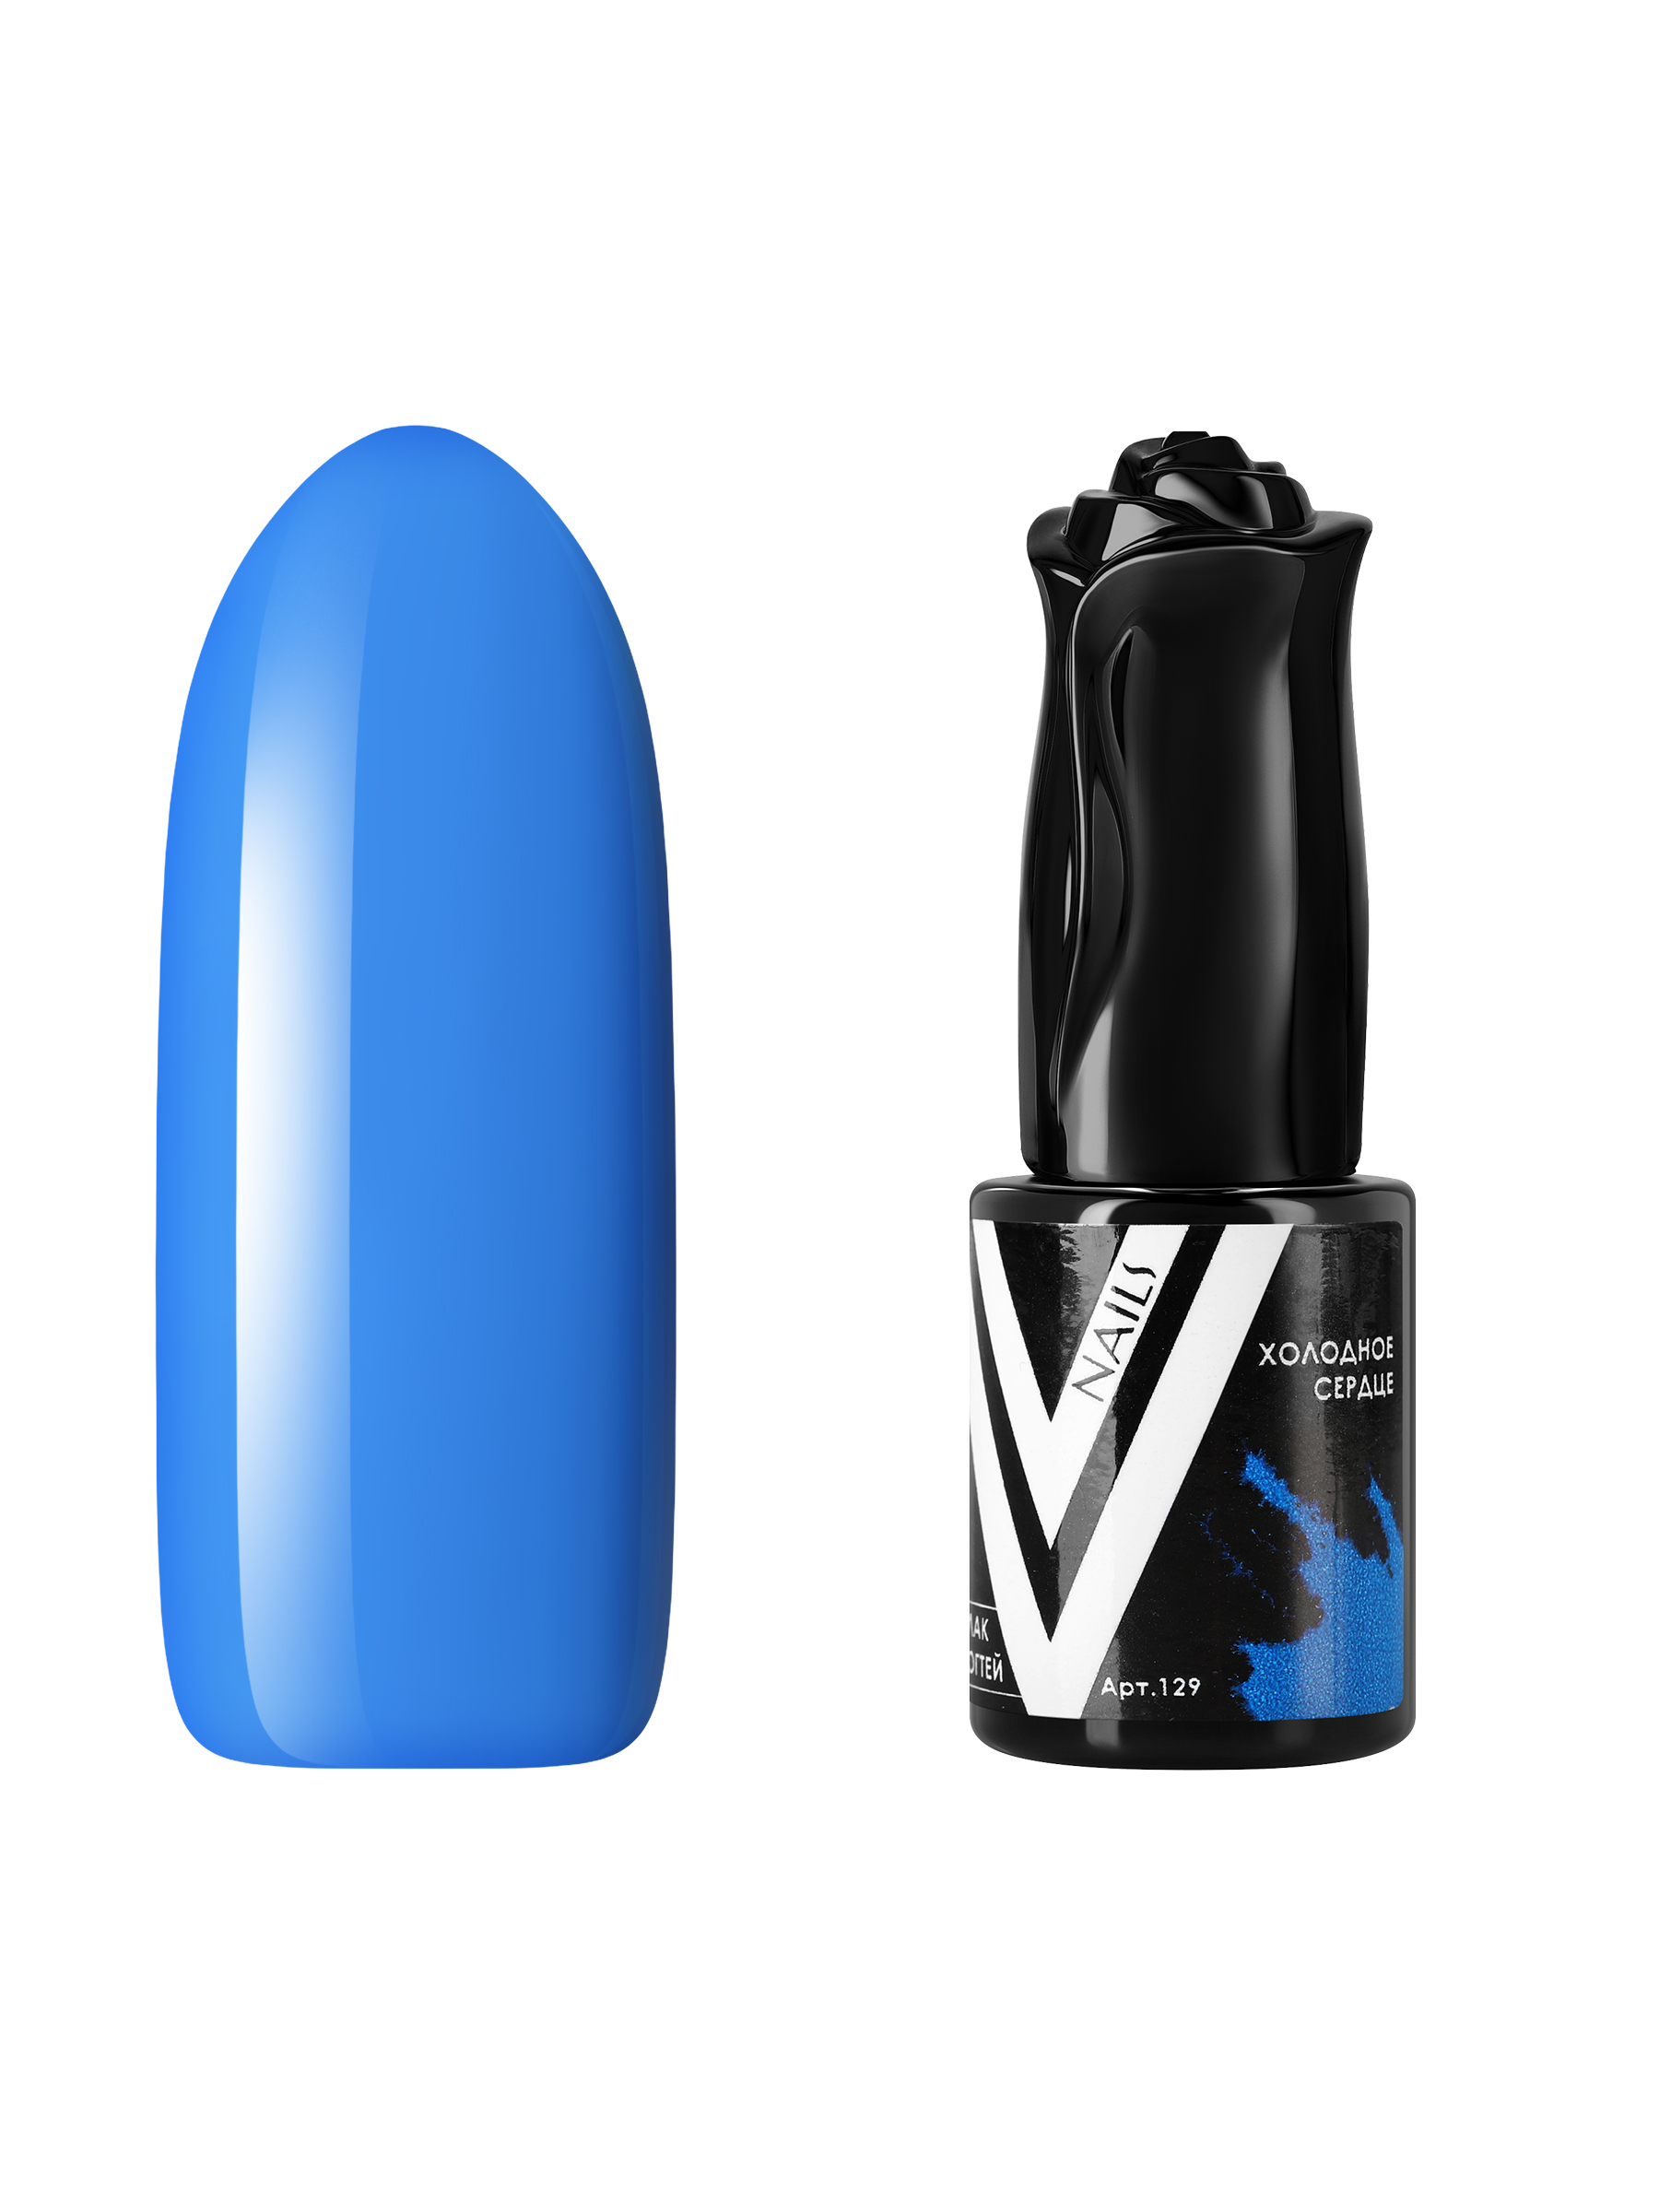 Гель-лак для ногтей Vogue Nails плотный самовыравнивающийся, яркий синий, 10 мл